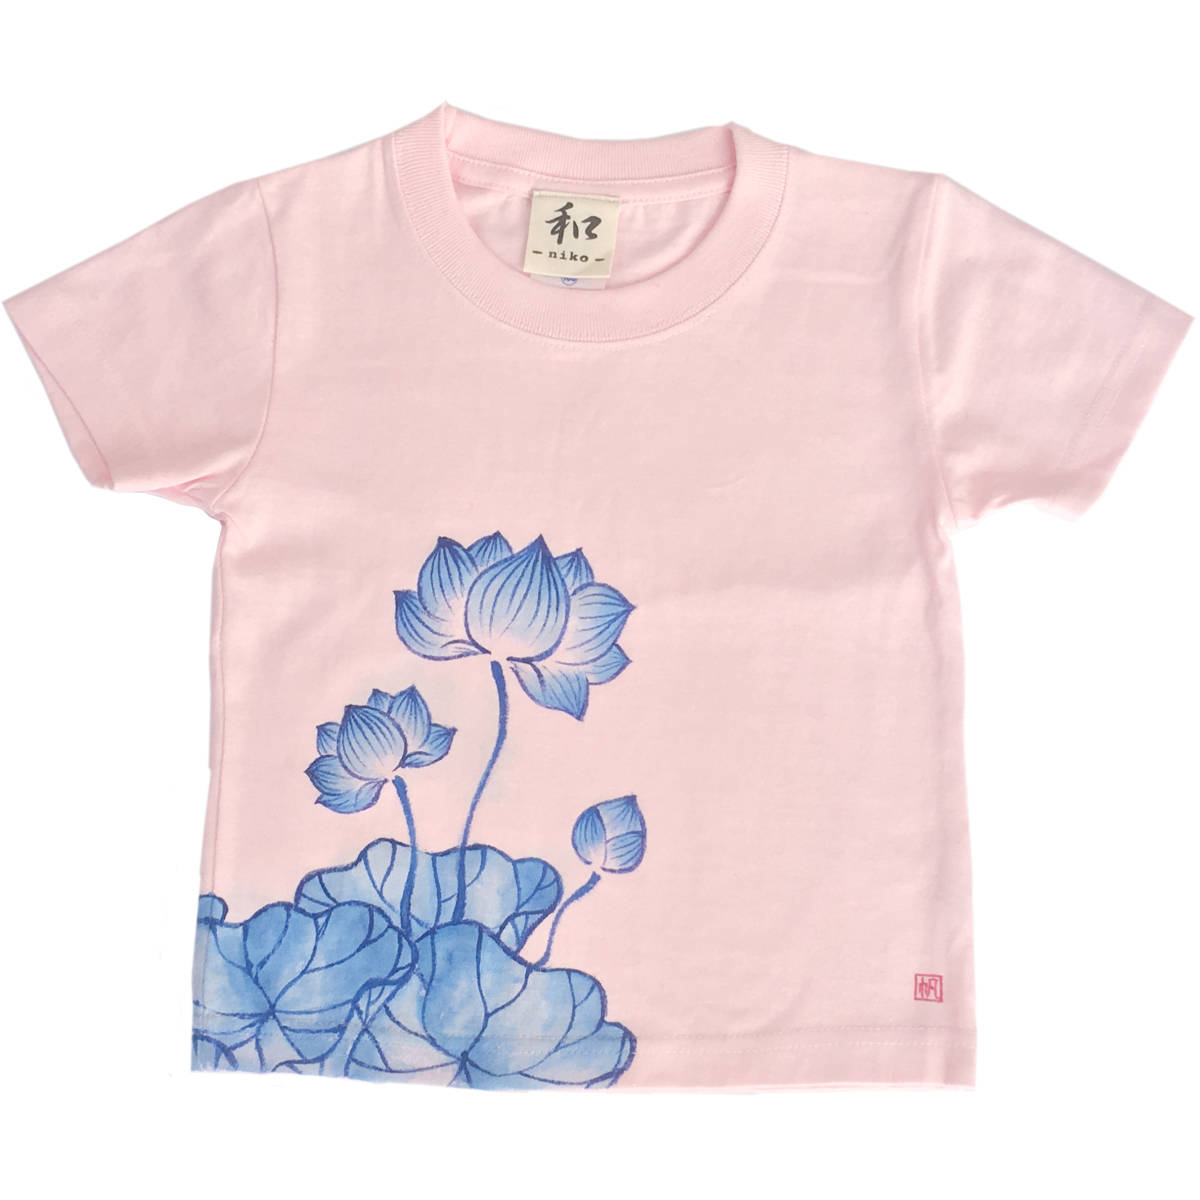 키즈 티셔츠, 사이즈 130, 핑크 로터스 패턴 티셔츠, 핸드페인팅 연꽃 패턴 티셔츠, 짧은 소매, 일본식 디자인, 일본식, 복고풍, 수공, 상의, 반소매 티셔츠, 130(125~134cm)